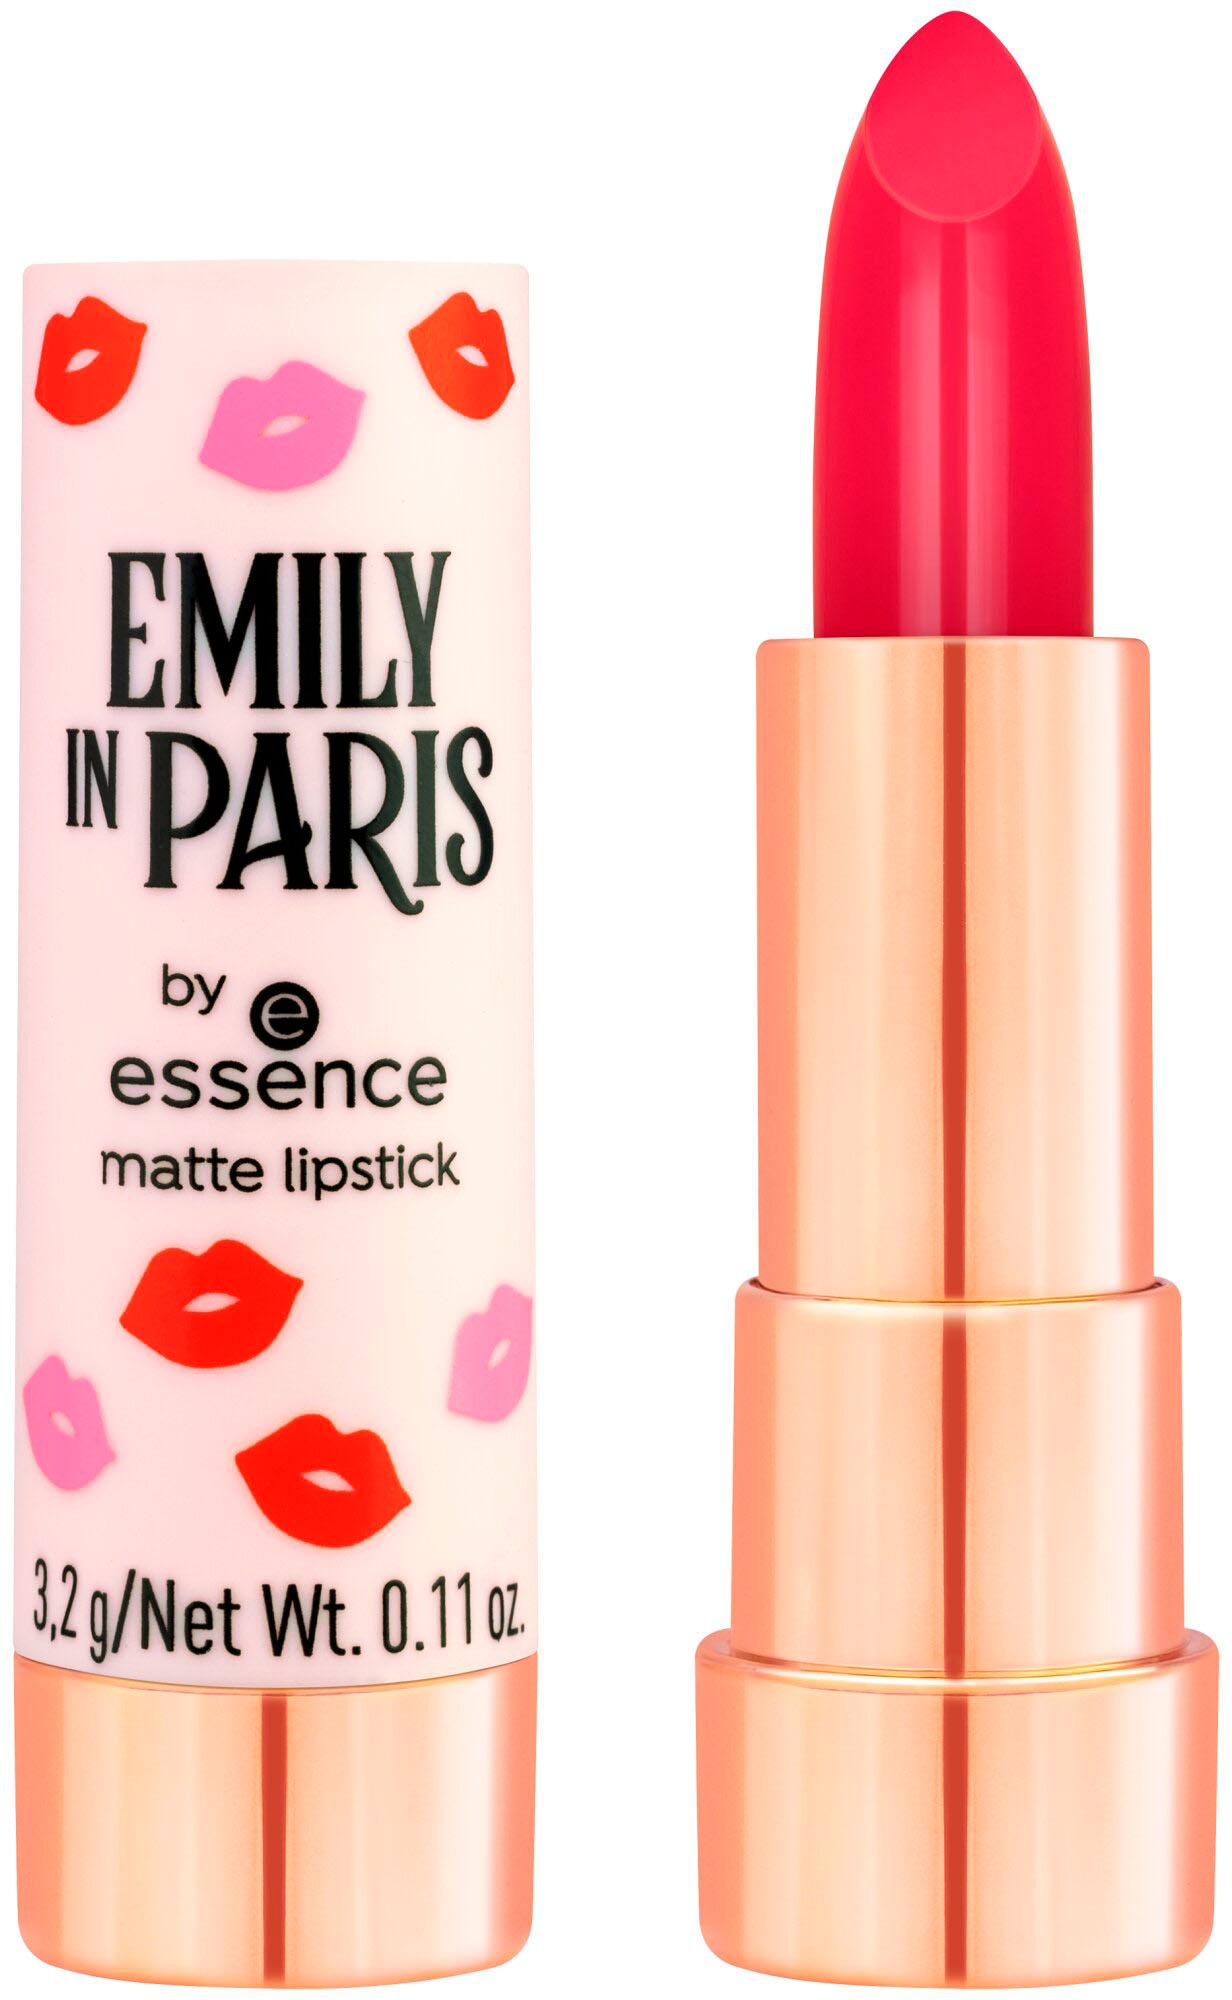 »EMILY Essence UNIVERSAL PARIS online lipstick« by essence Lippenstift bei matte IN